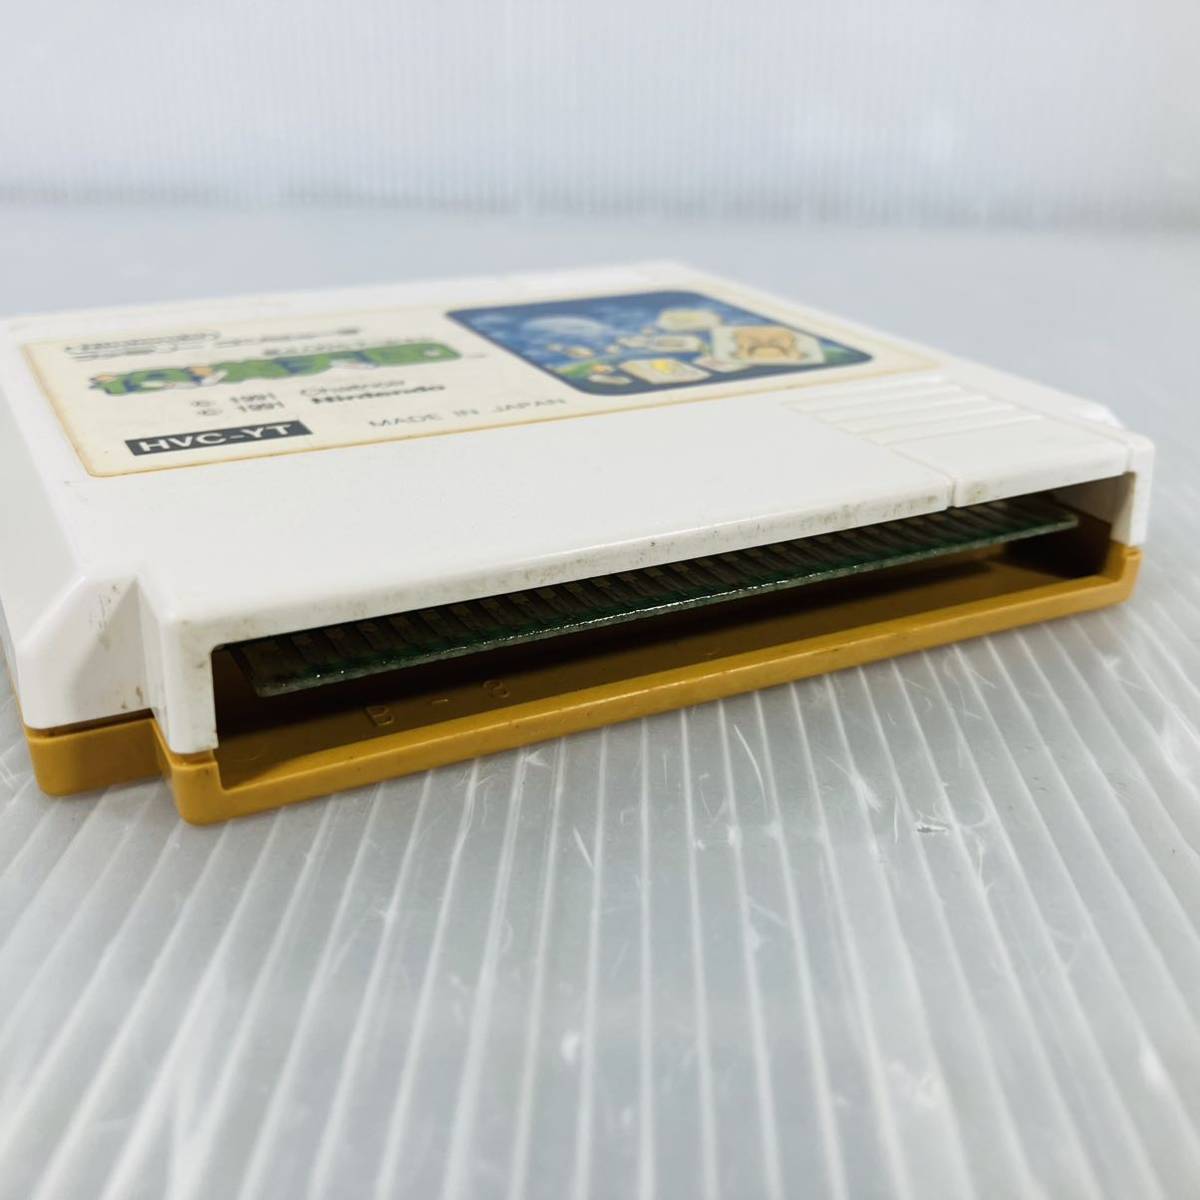 FC304* Famicom soft позиций полный небо страна nintendo коробка мнение нет soft только 